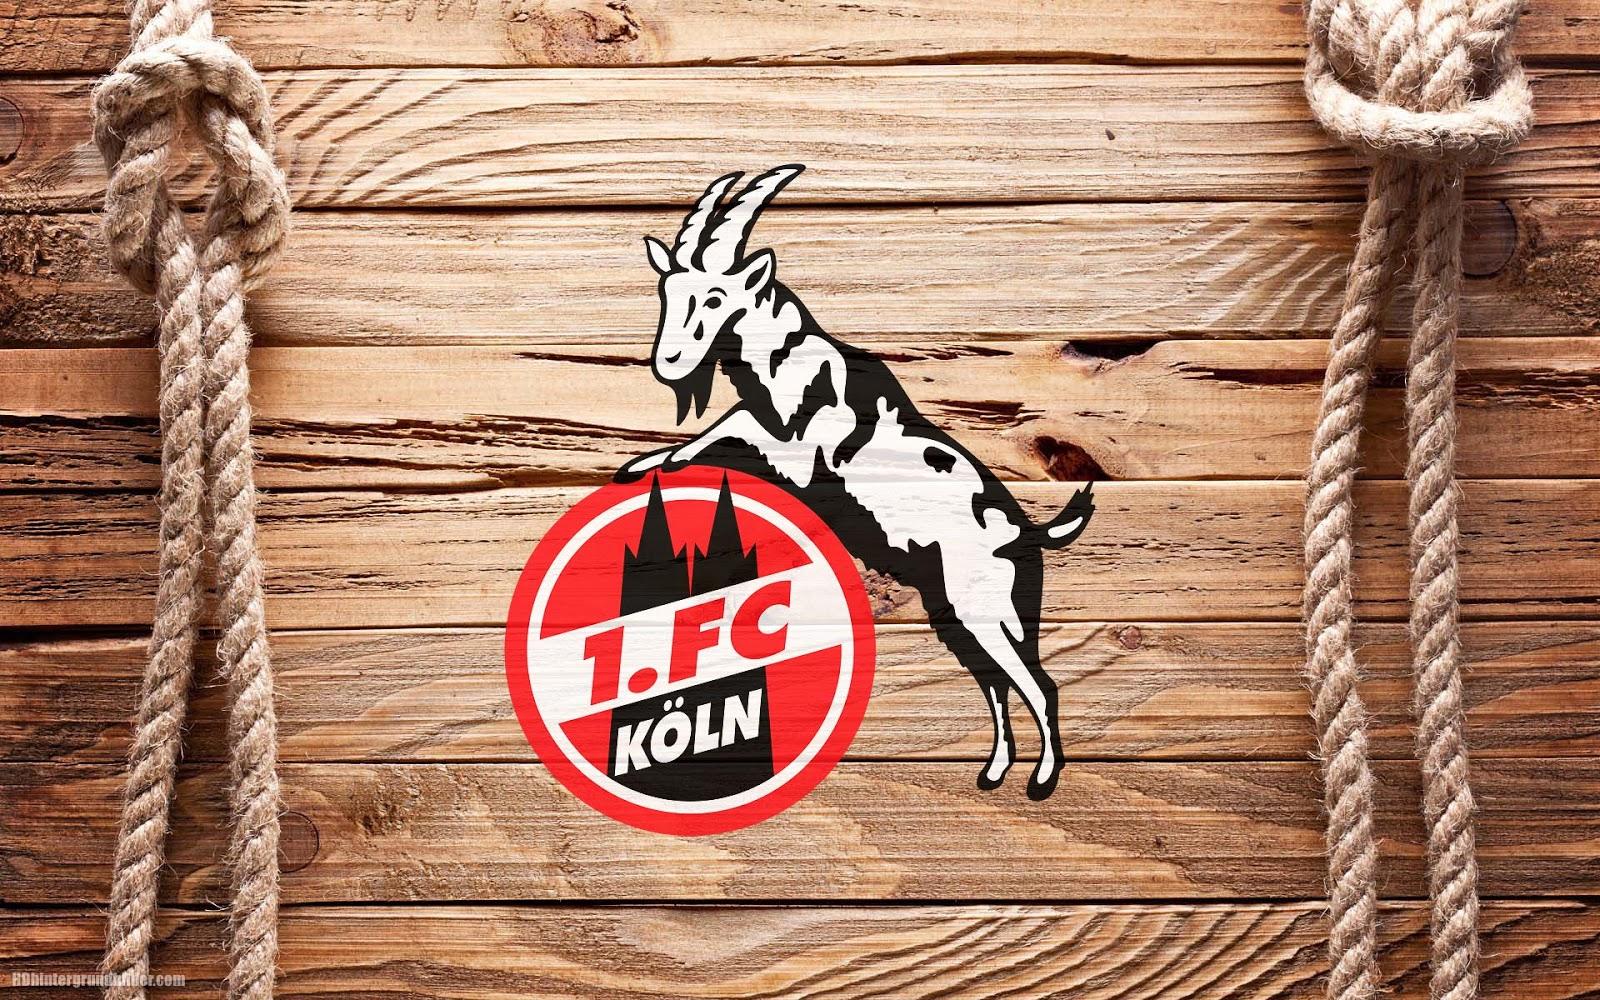 1. FC Köln wallpaper